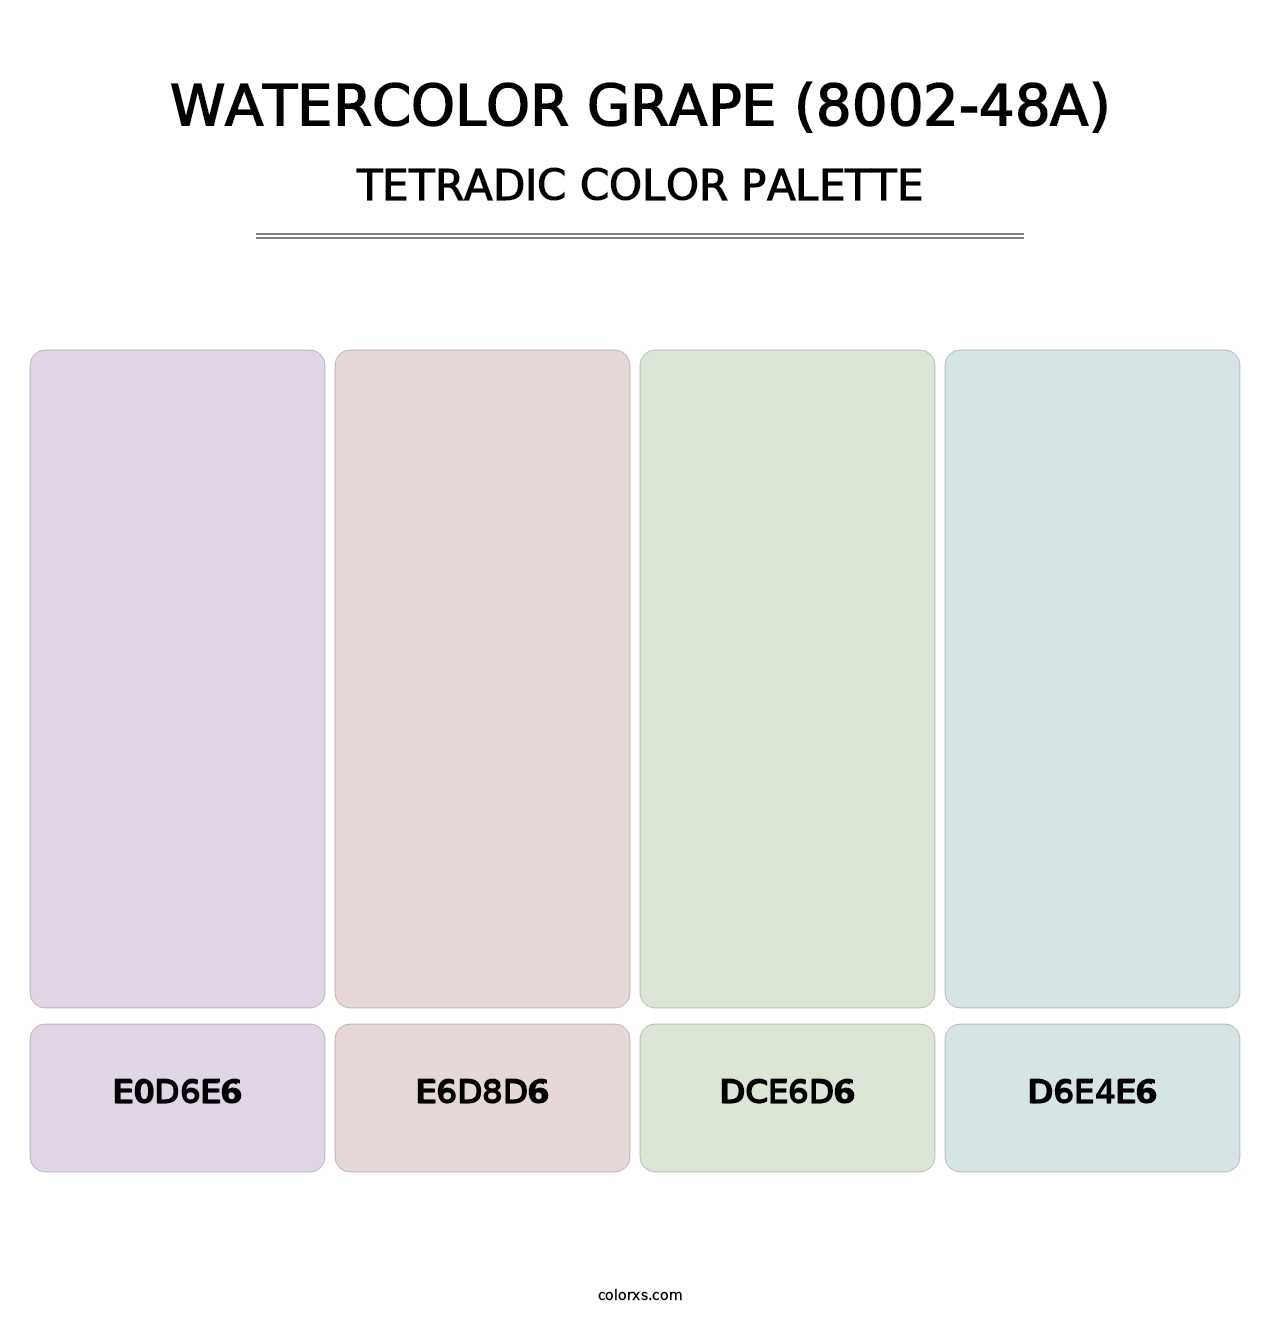 Watercolor Grape (8002-48A) - Tetradic Color Palette